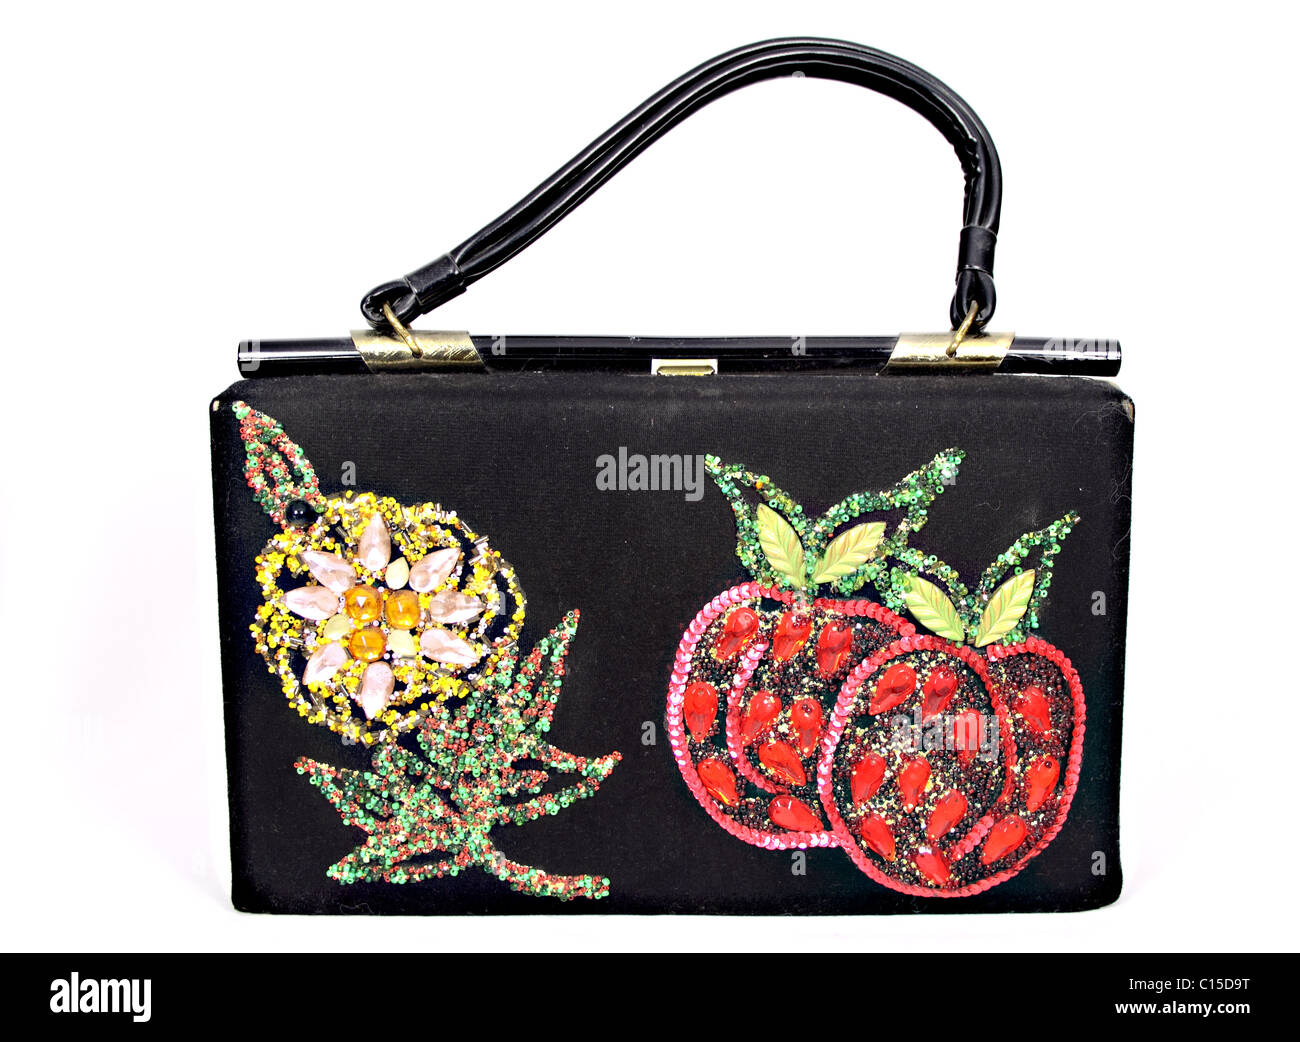 Handtasche mit Blumenmuster aus Pailletten und Glitter gemacht. Box-Tasche mit Kunststoffgriff. Stockfoto